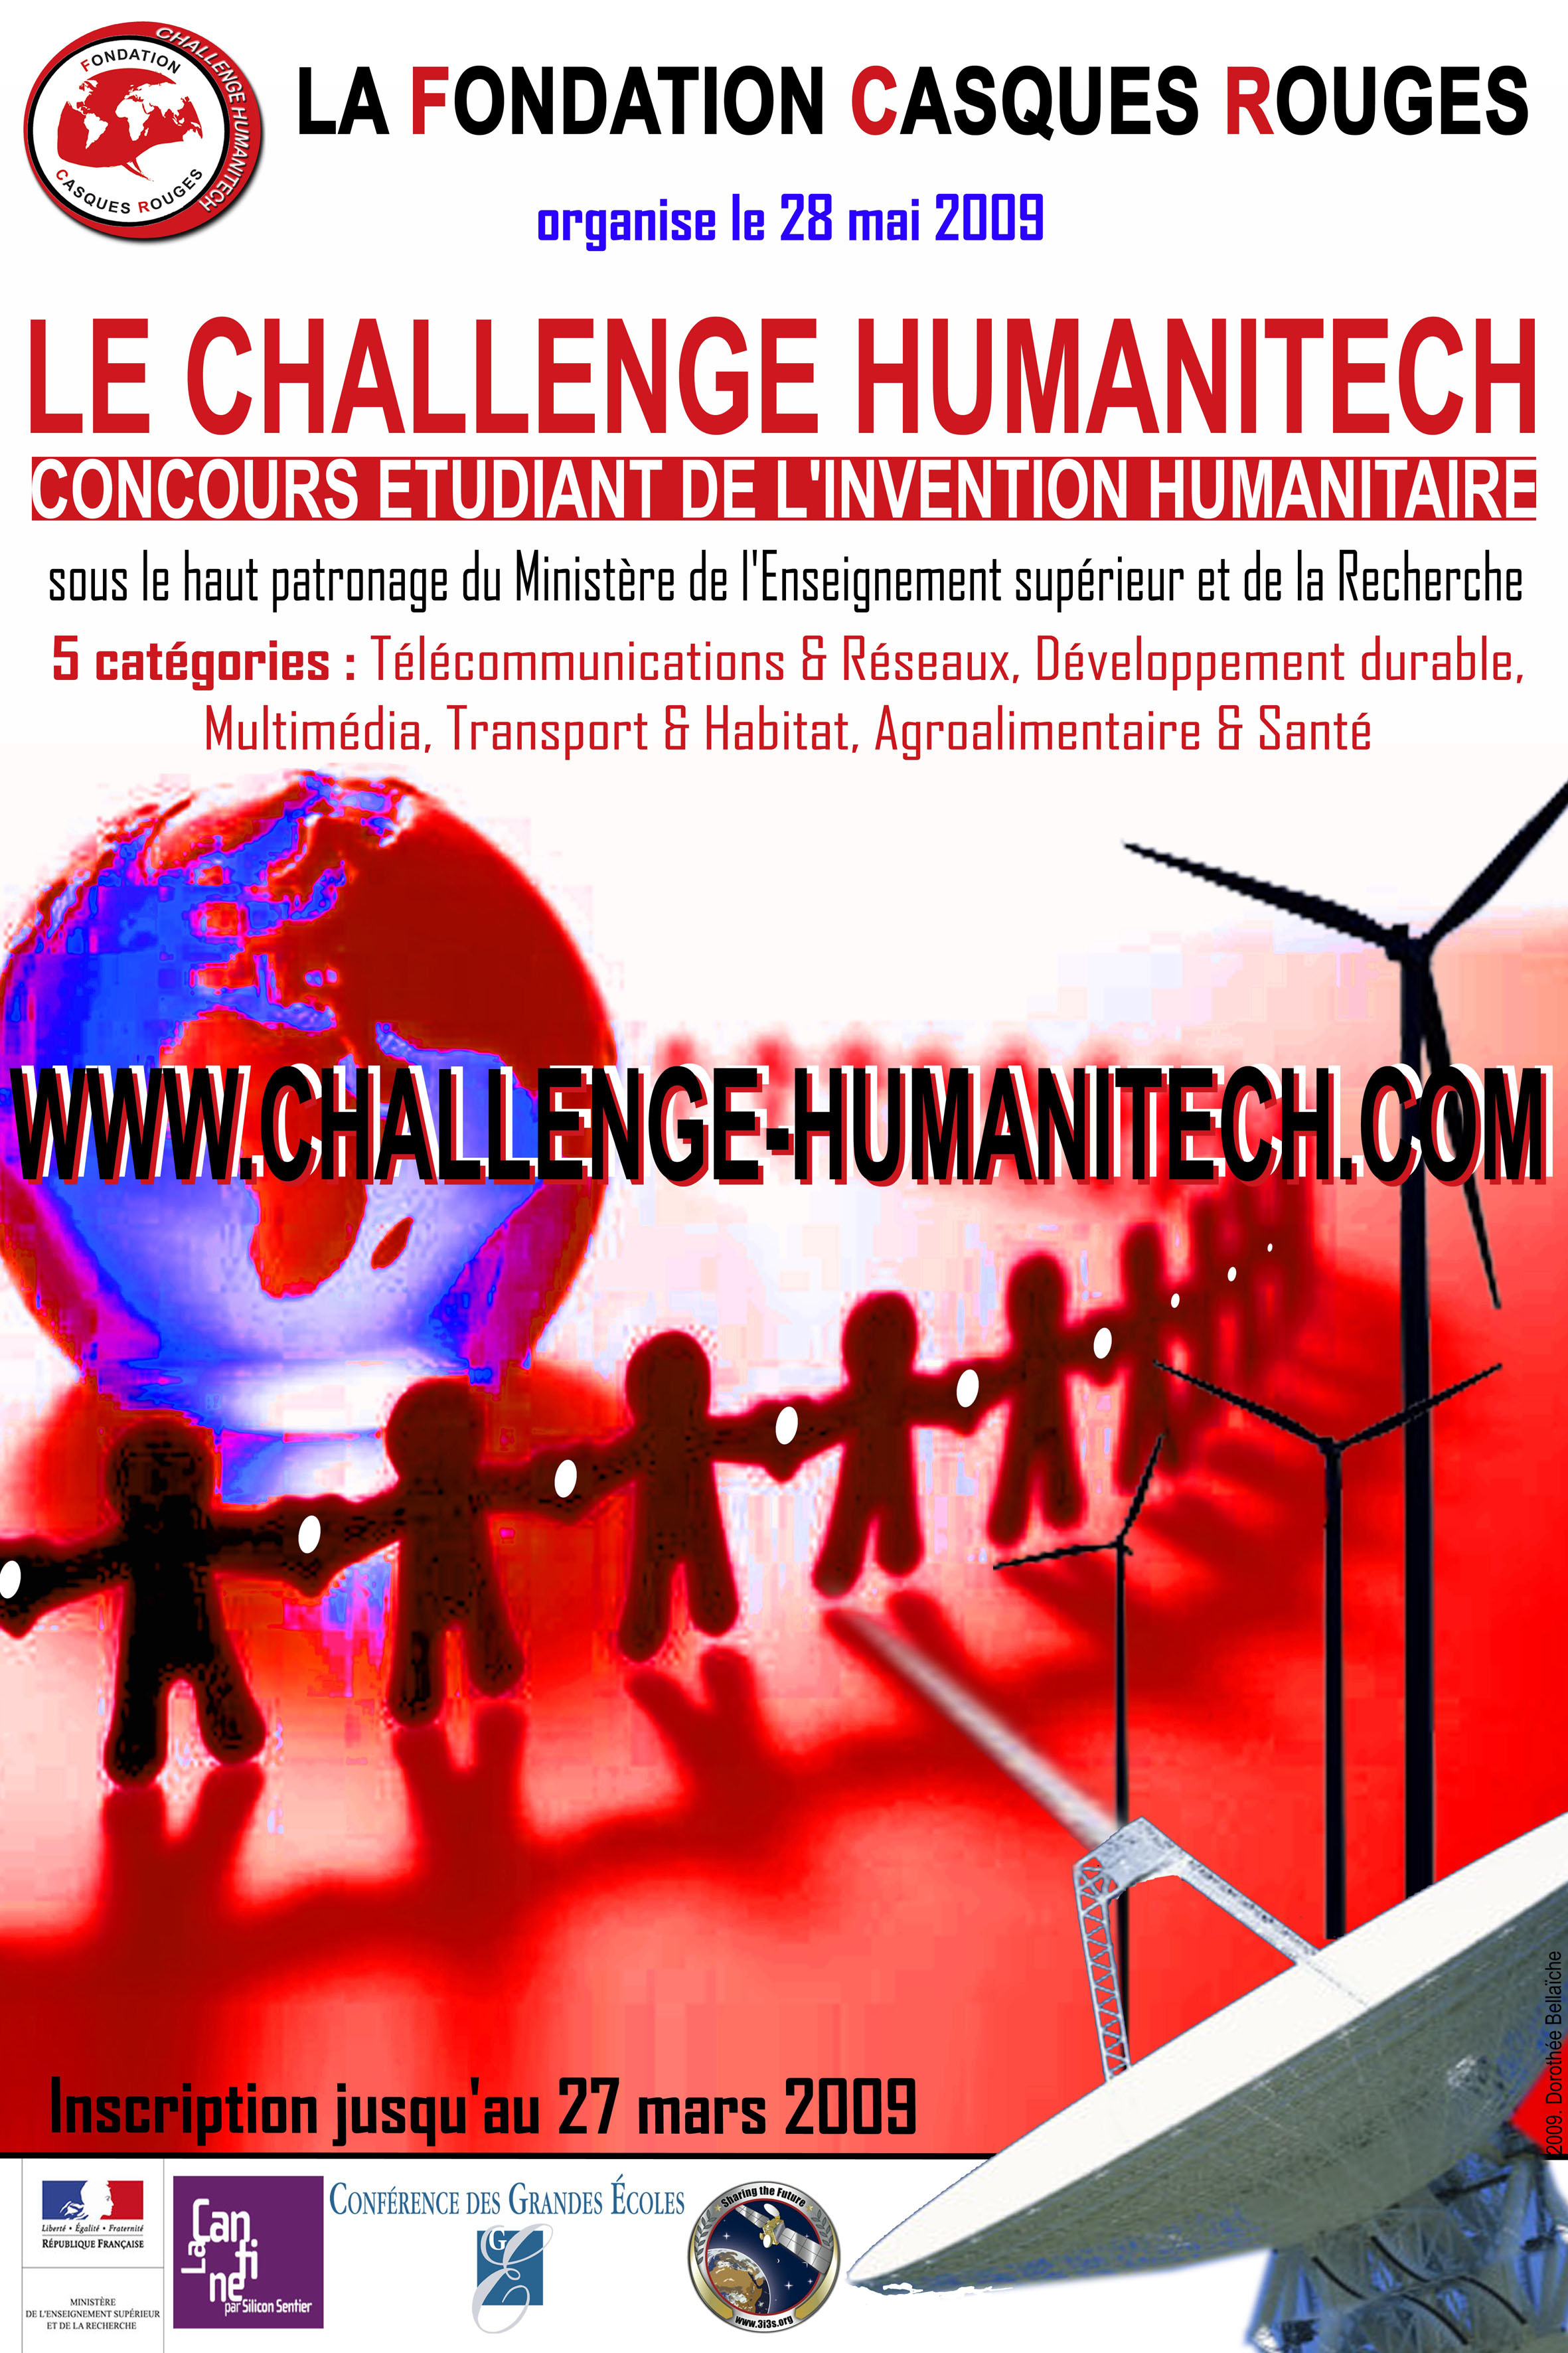 3i3s Partenaire CASQUES ROUGES: Challenge Humanitech 2009